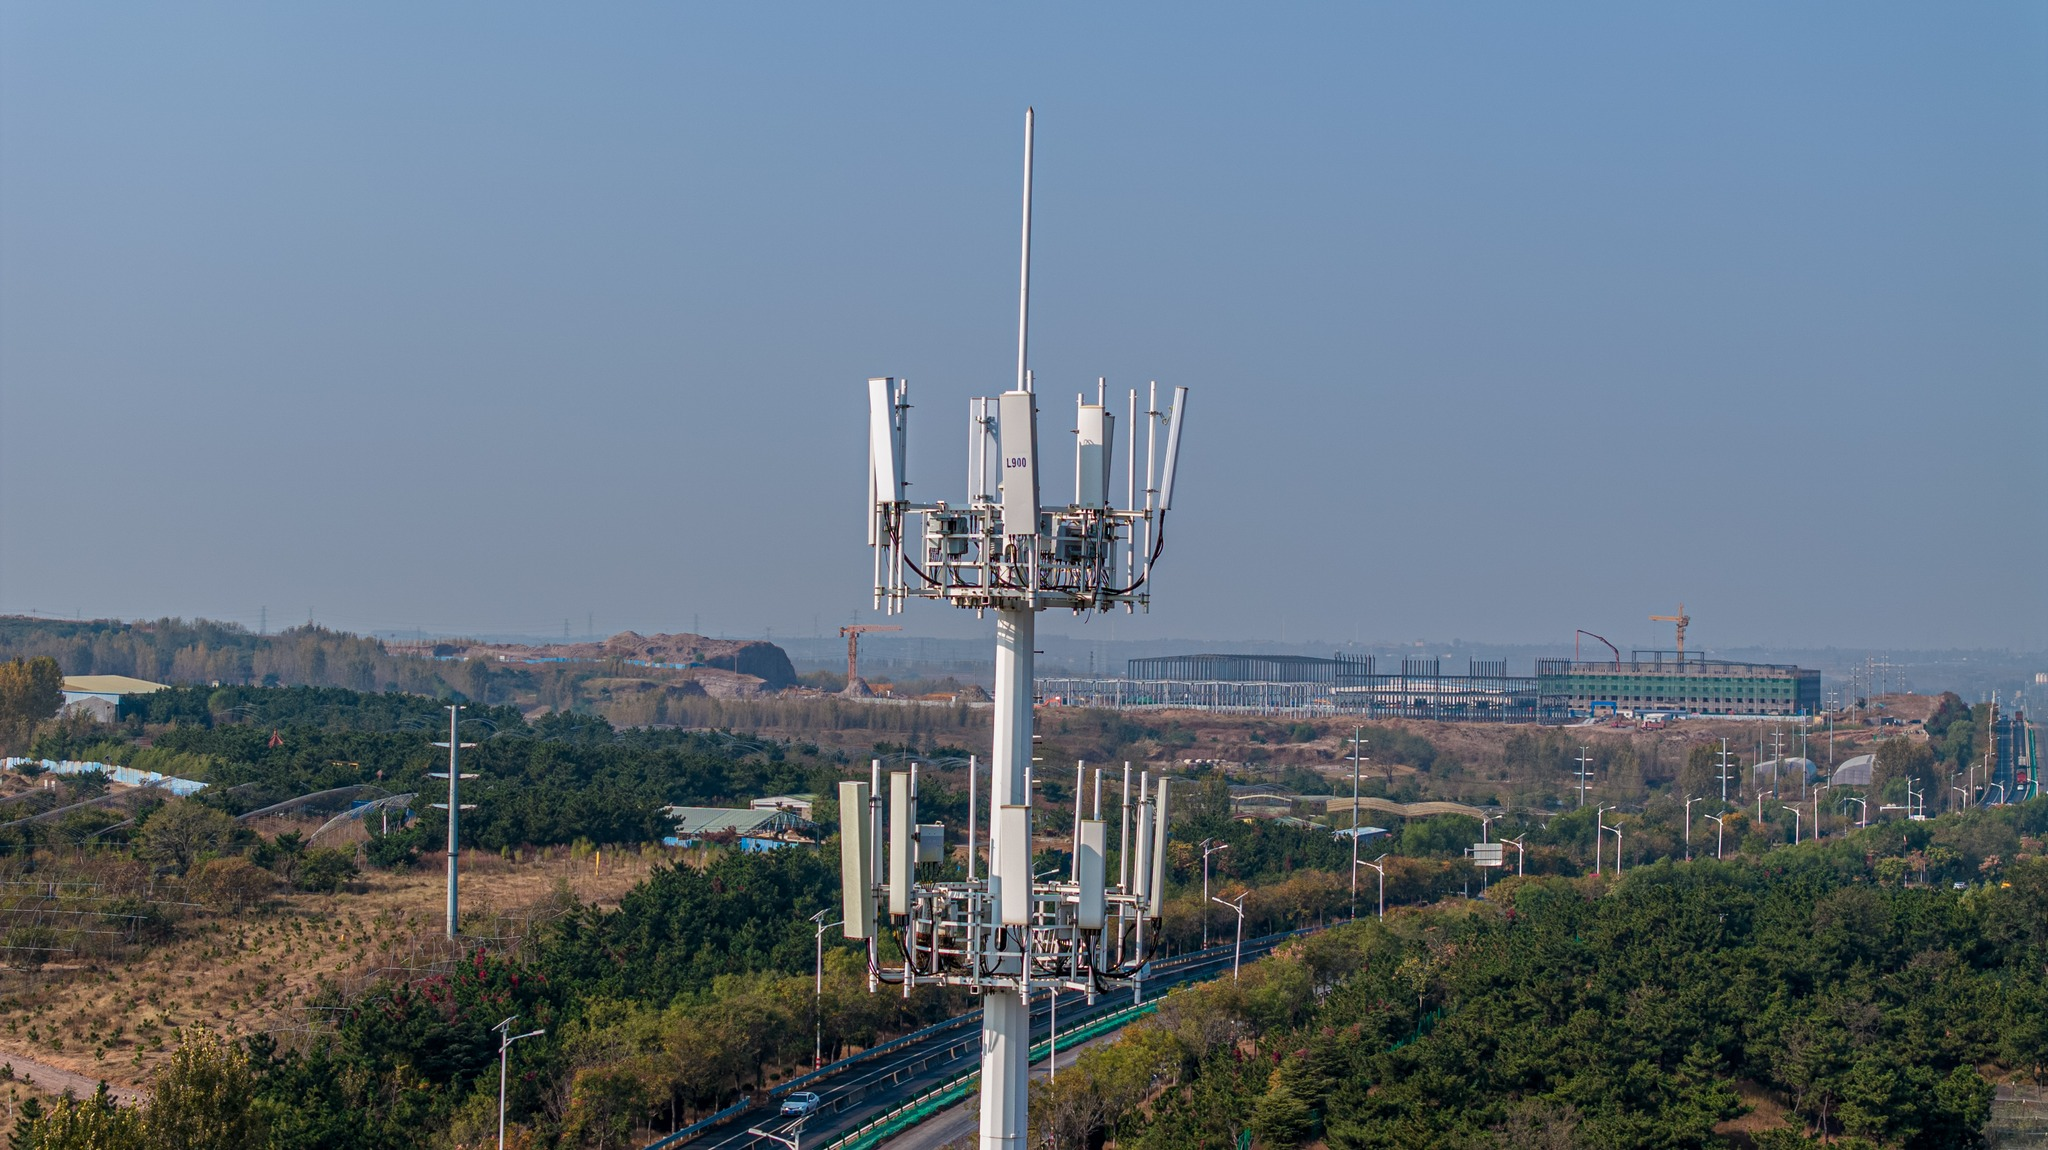 La carga de la antena en una torre monopolo puede influir significativamente en el diseño de la torre de las siguientes maneras